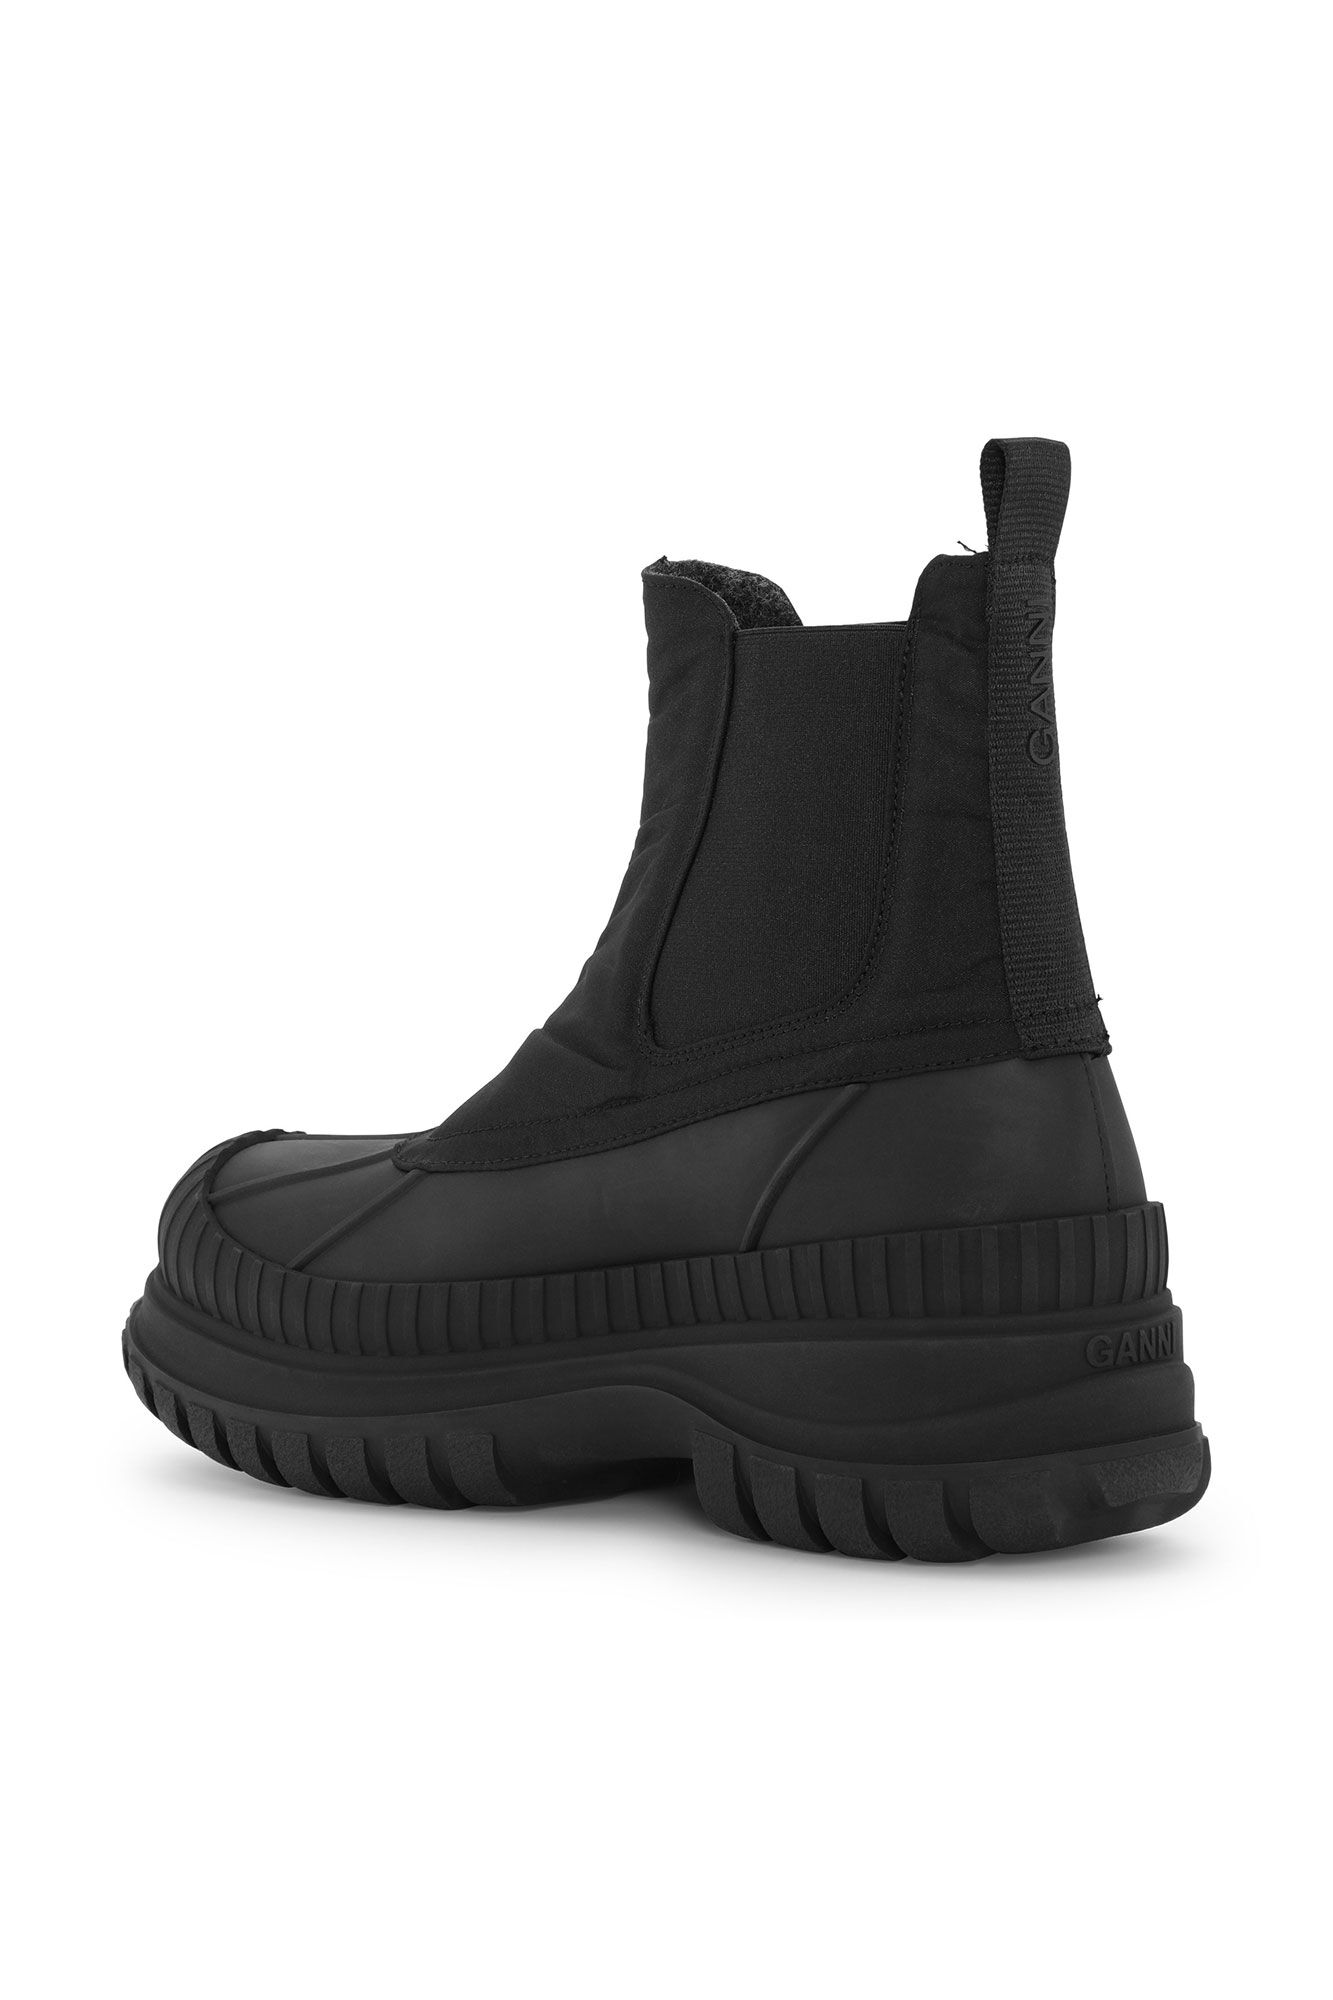 Black Outdoor Chelsea Boots